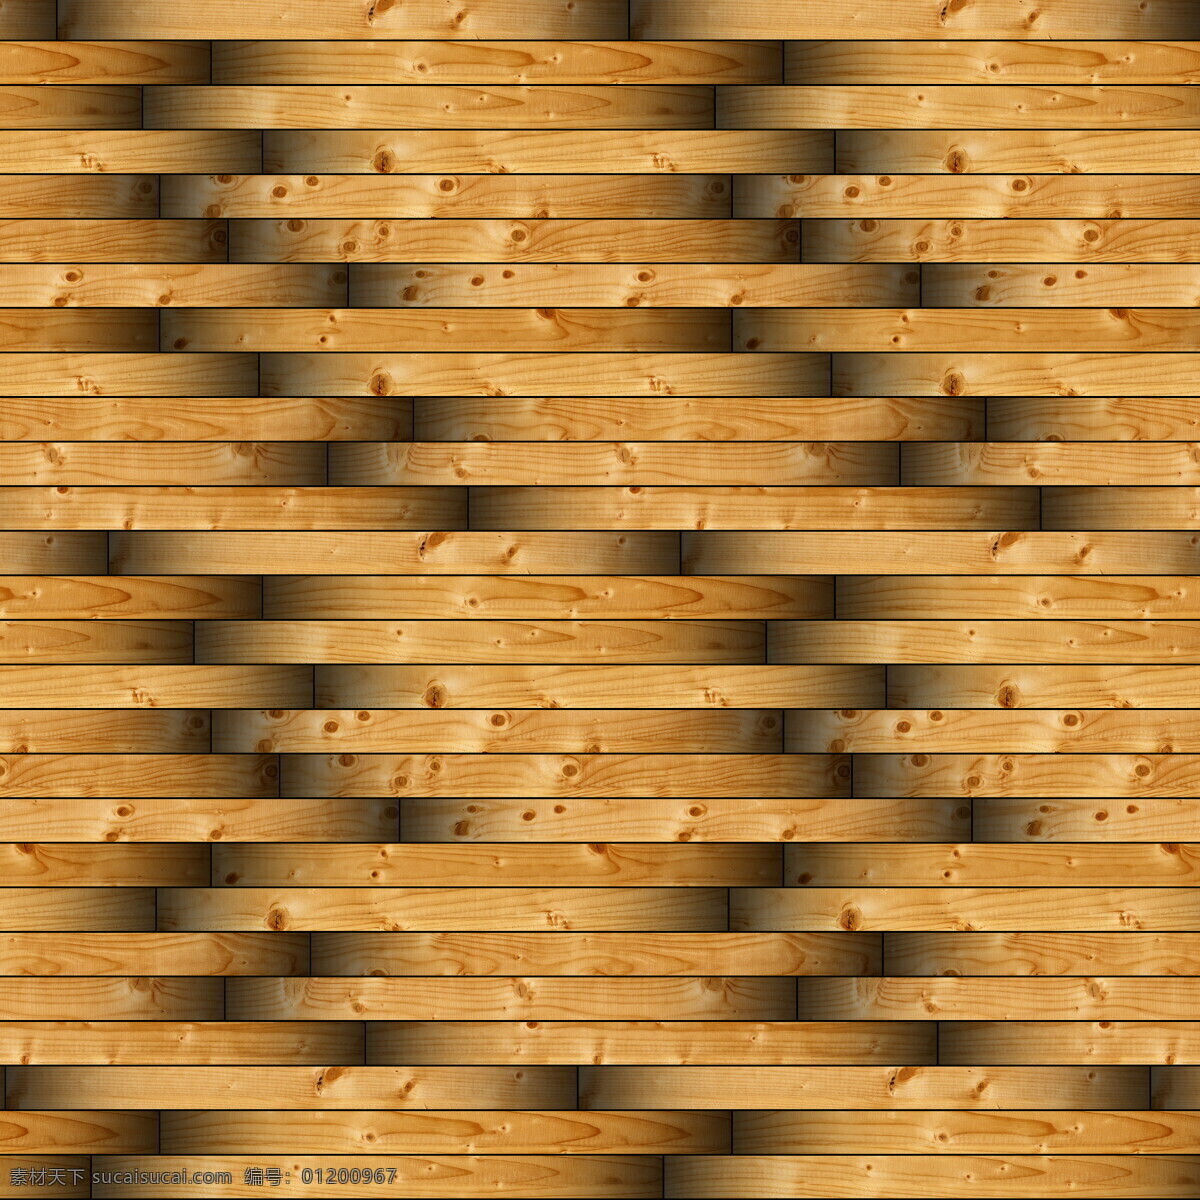 黄 黑色 叠加 木纹 背景素材 材质贴图 高清木纹 木地板 堆叠木纹 高清 室内设计 木纹纹理 木质纹理 地板 木头 木板背景